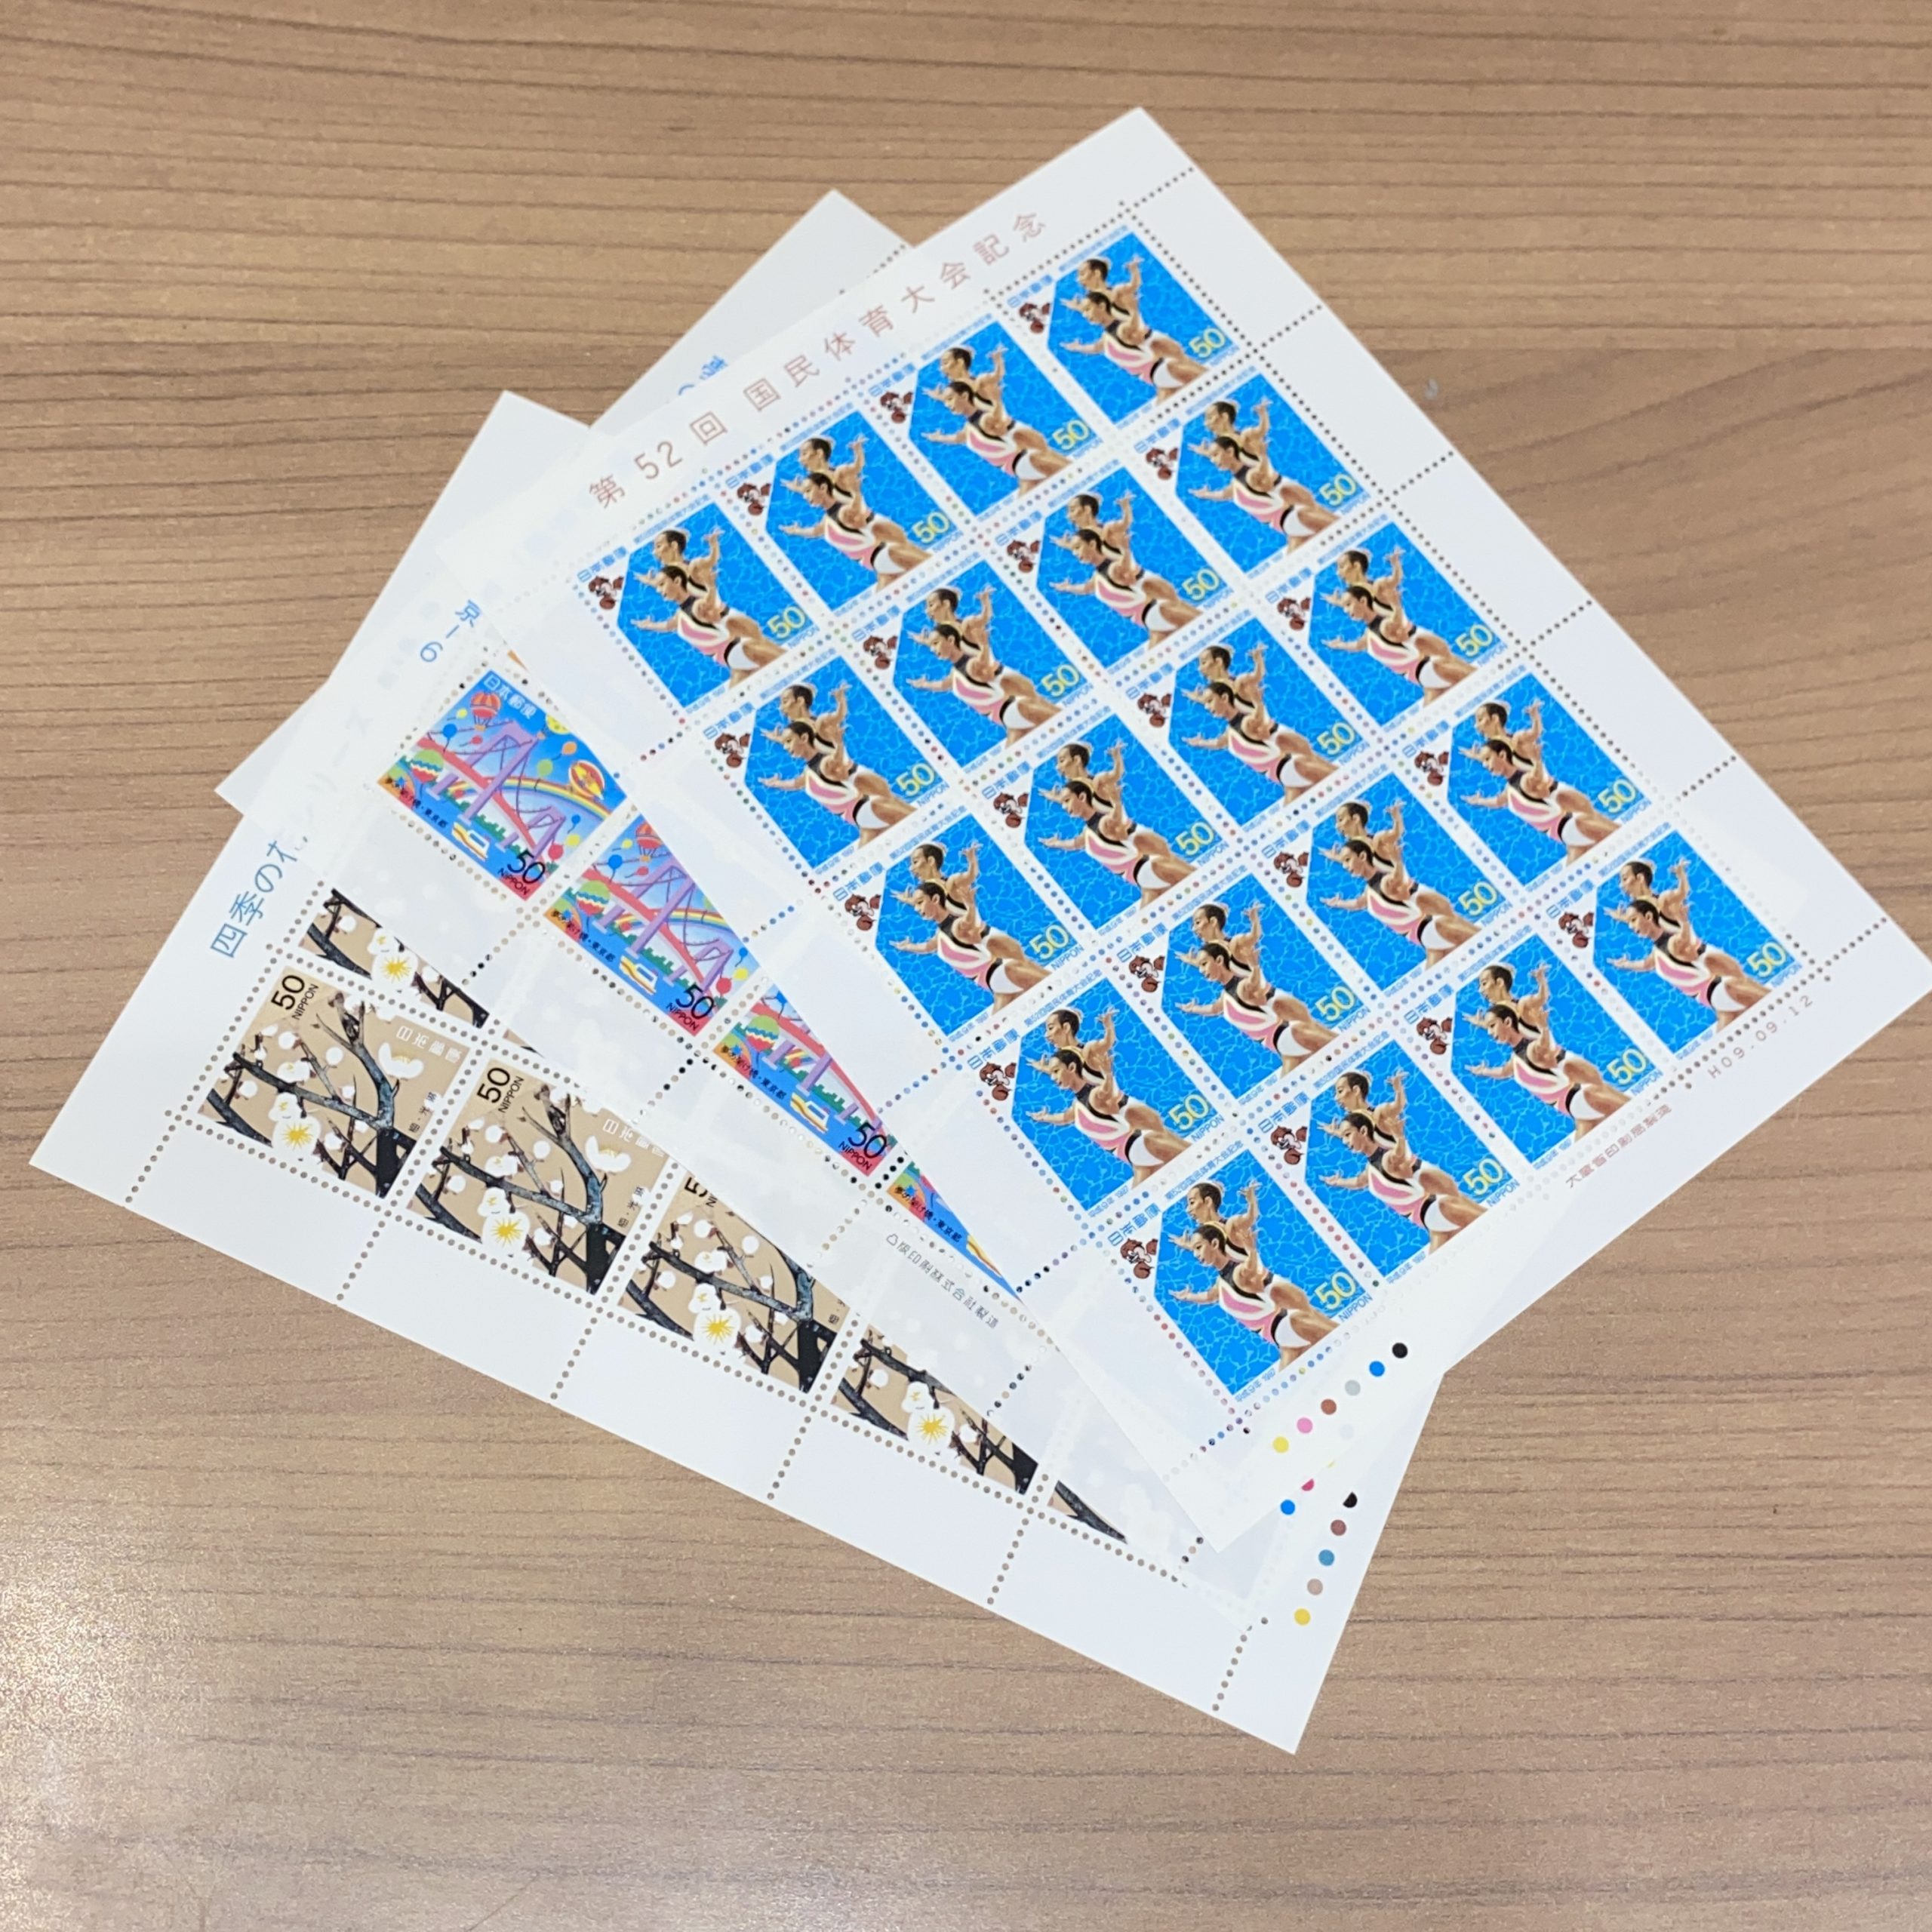 日本シート切手 50円×20面